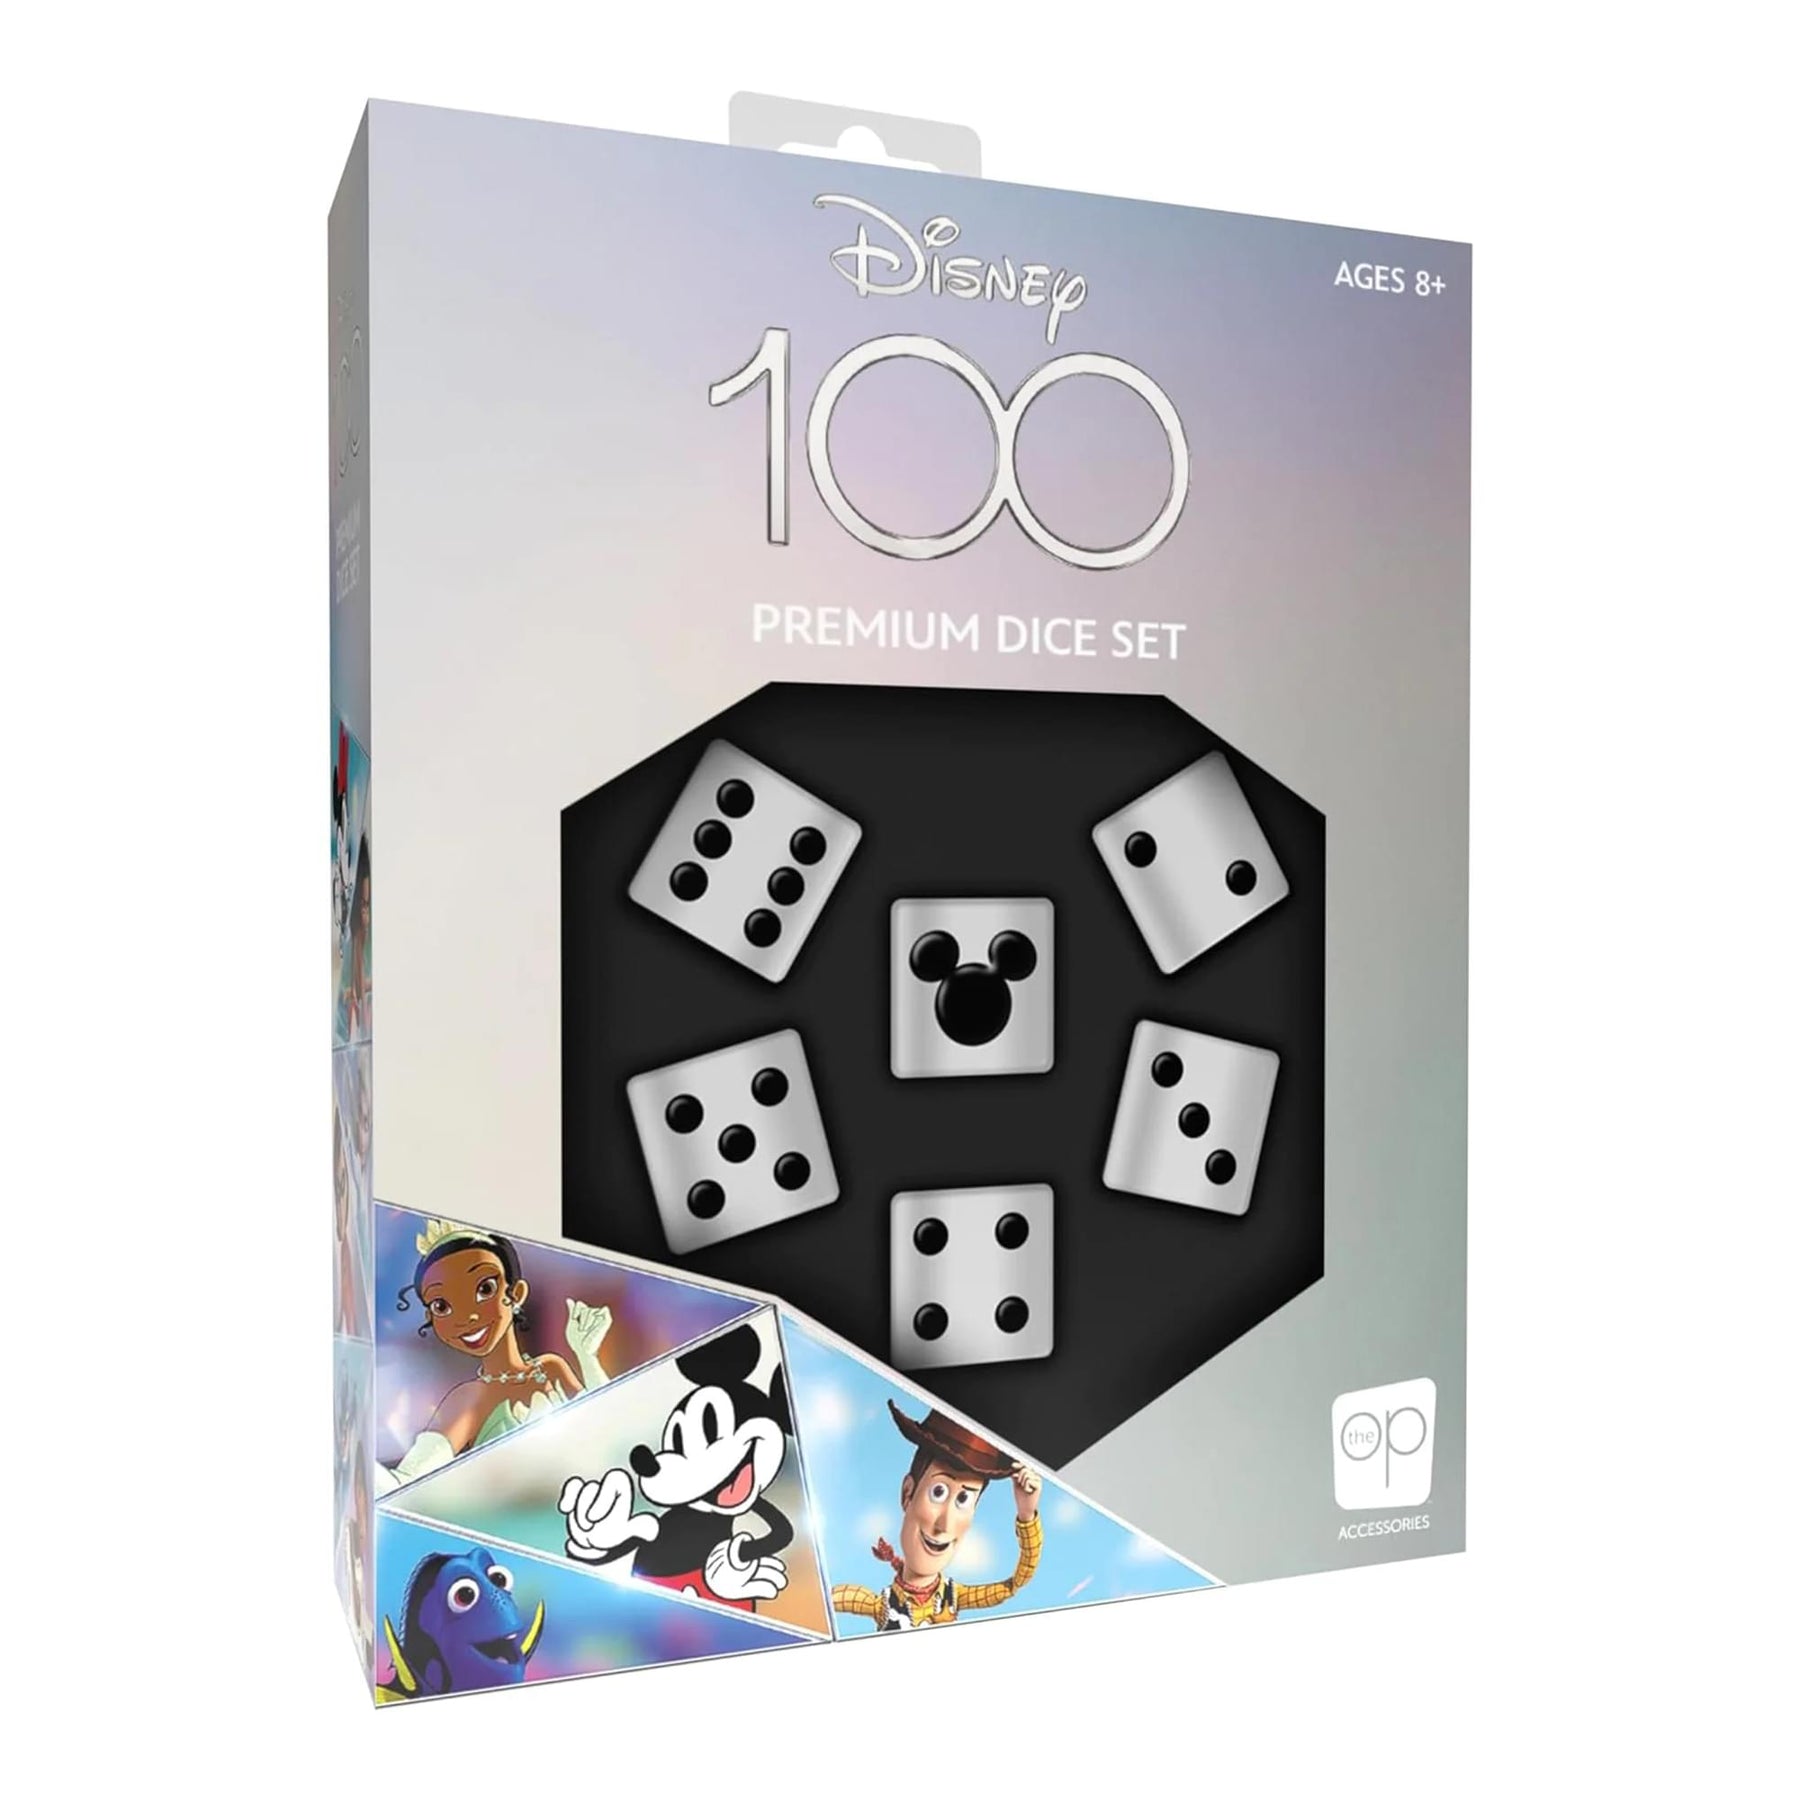 Disney 100 Premium Dice | Includes 6 Acrylic Dice